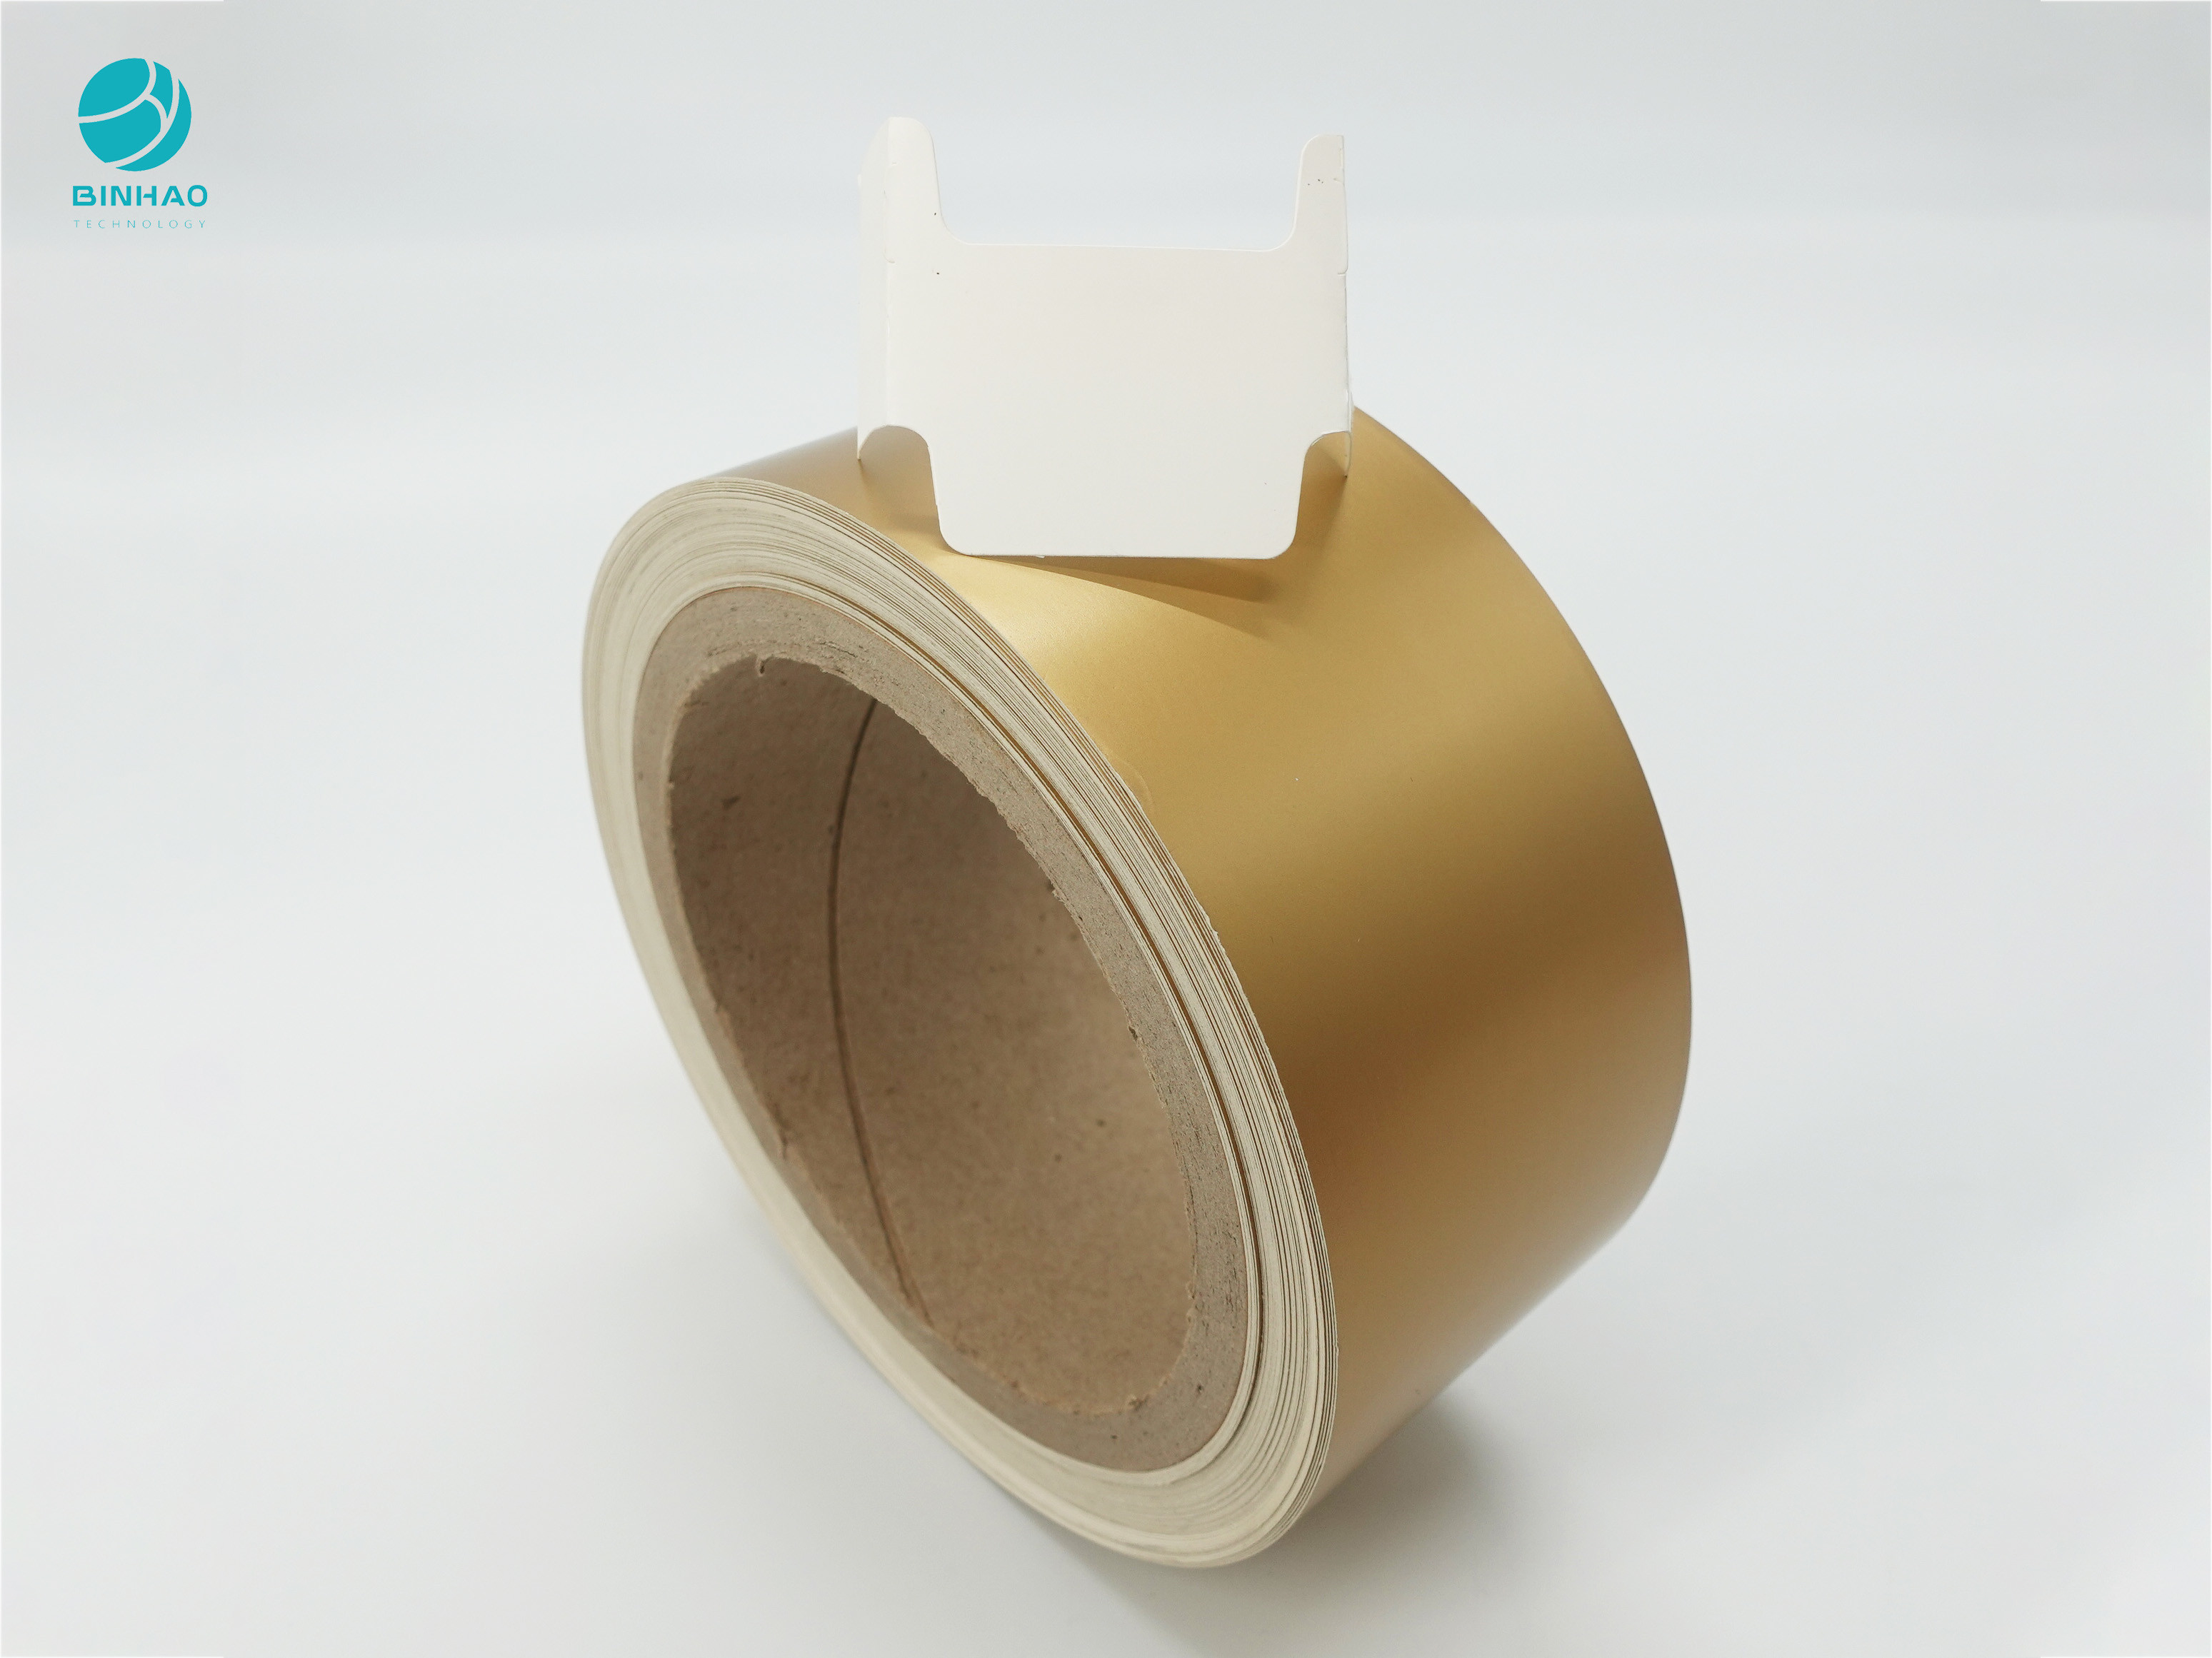 قاب داخلی کاغذ مقوا با روکش فلزی برای بسته بندی مورد سیگار